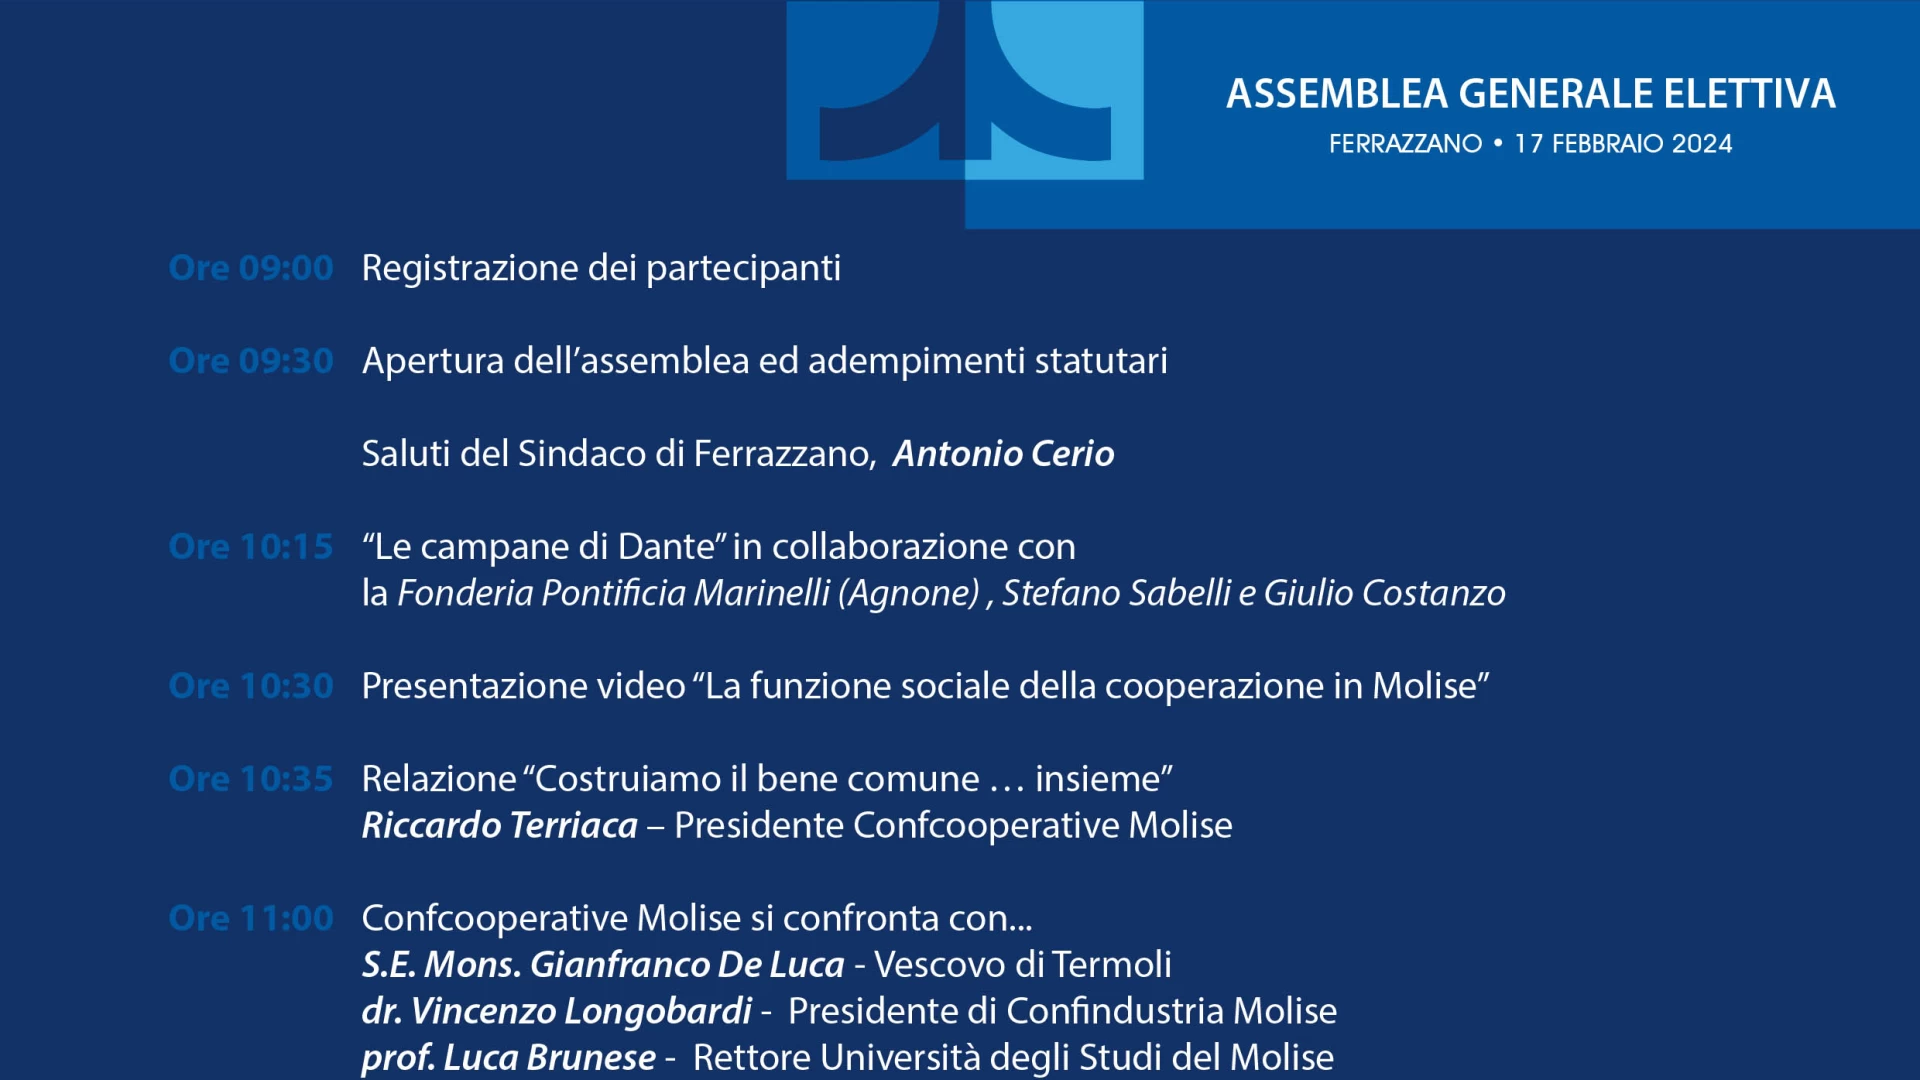 Sabato 17 febbraio a Ferrazzano l'assemblea elettiva di Confcooperative Molise. Il programma completo dell'evento.